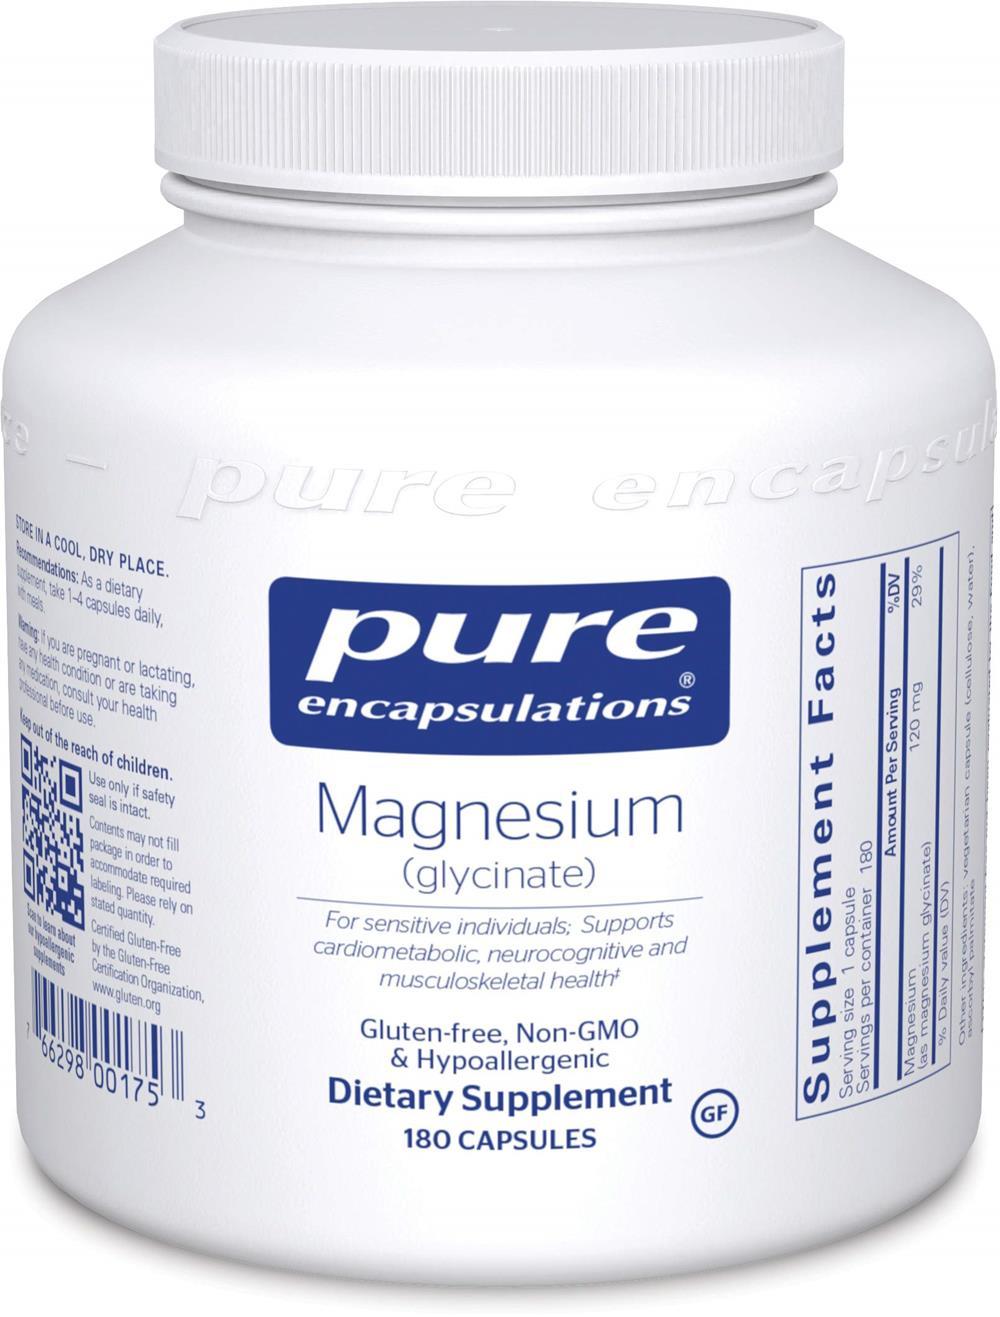 Pure Encapsulations Magnesium (glycinate) -- 90 Capsules 180 capsules